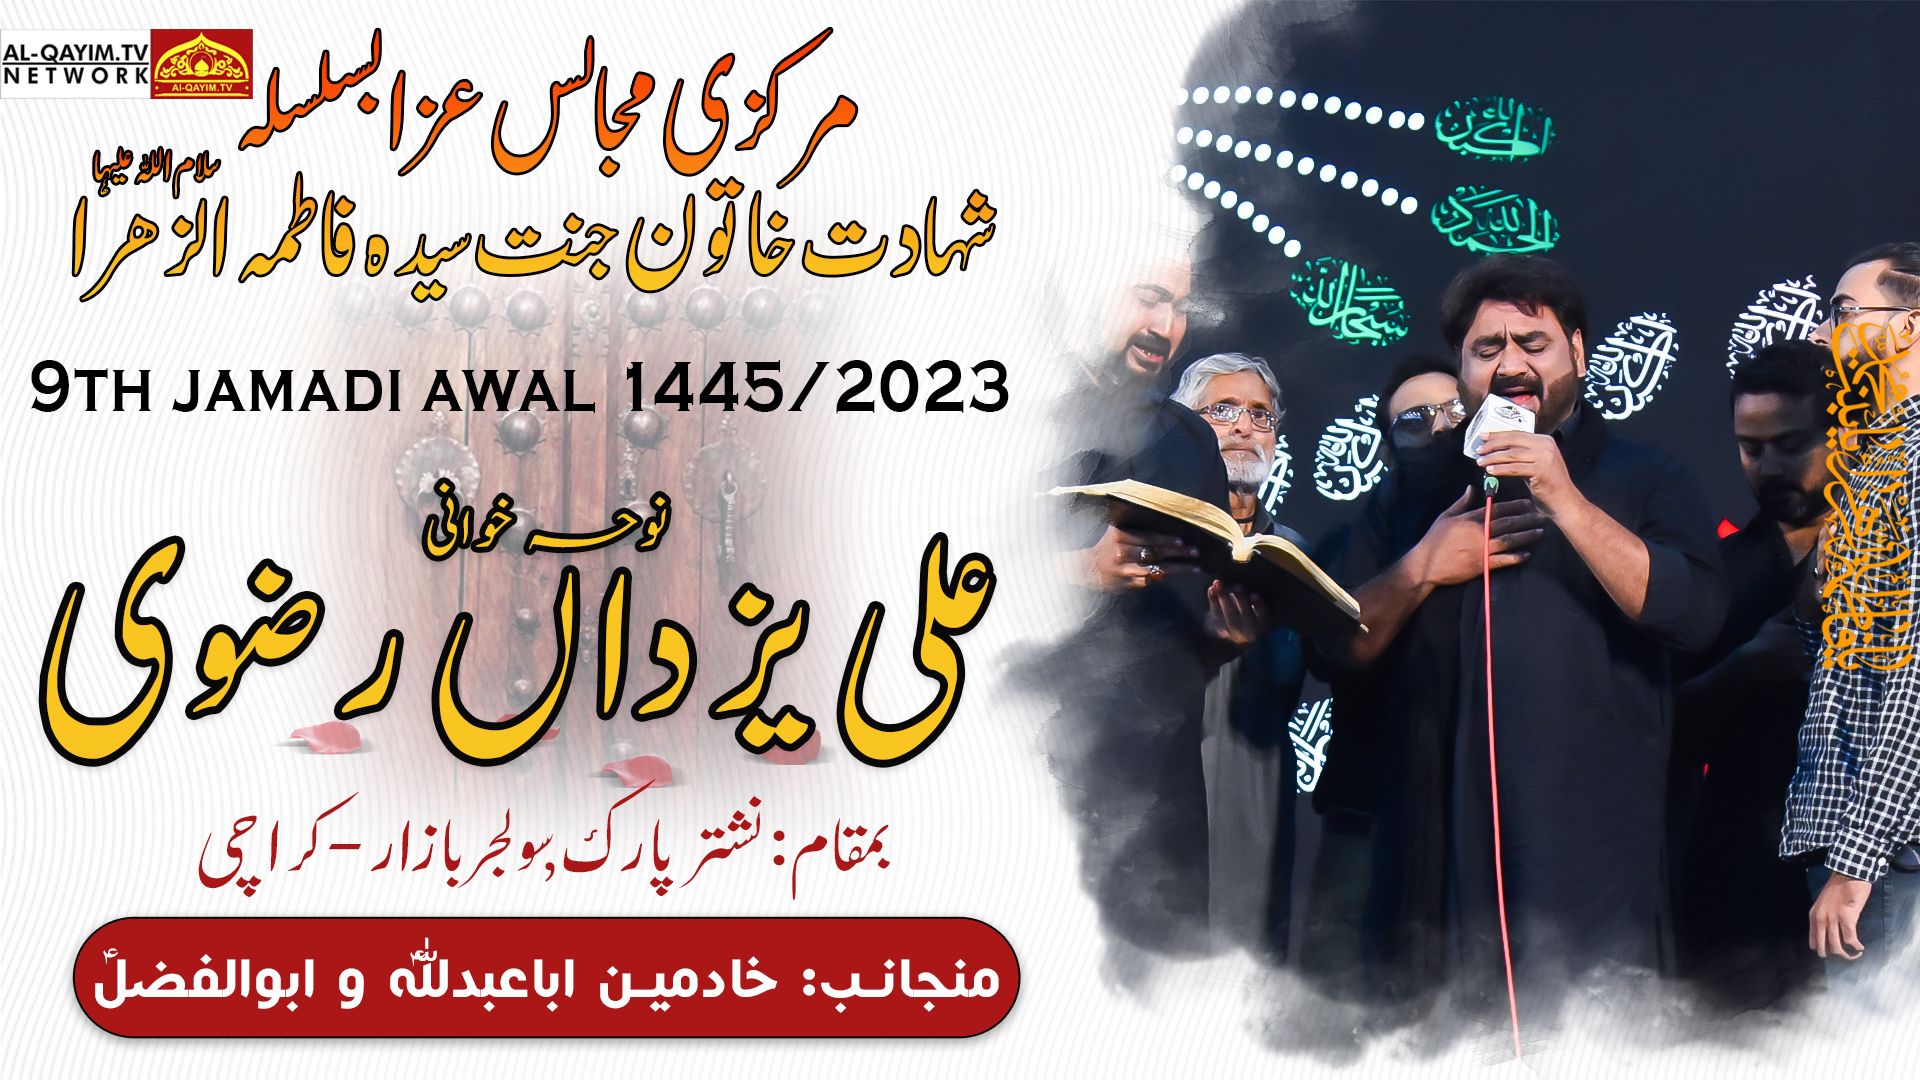 Noha | Ayyam-e-Fatemiyah Markazi Majalis #1 | Ali Yazdain Rizvi | 9th Jamadi Awal 2023, Nishtar Park